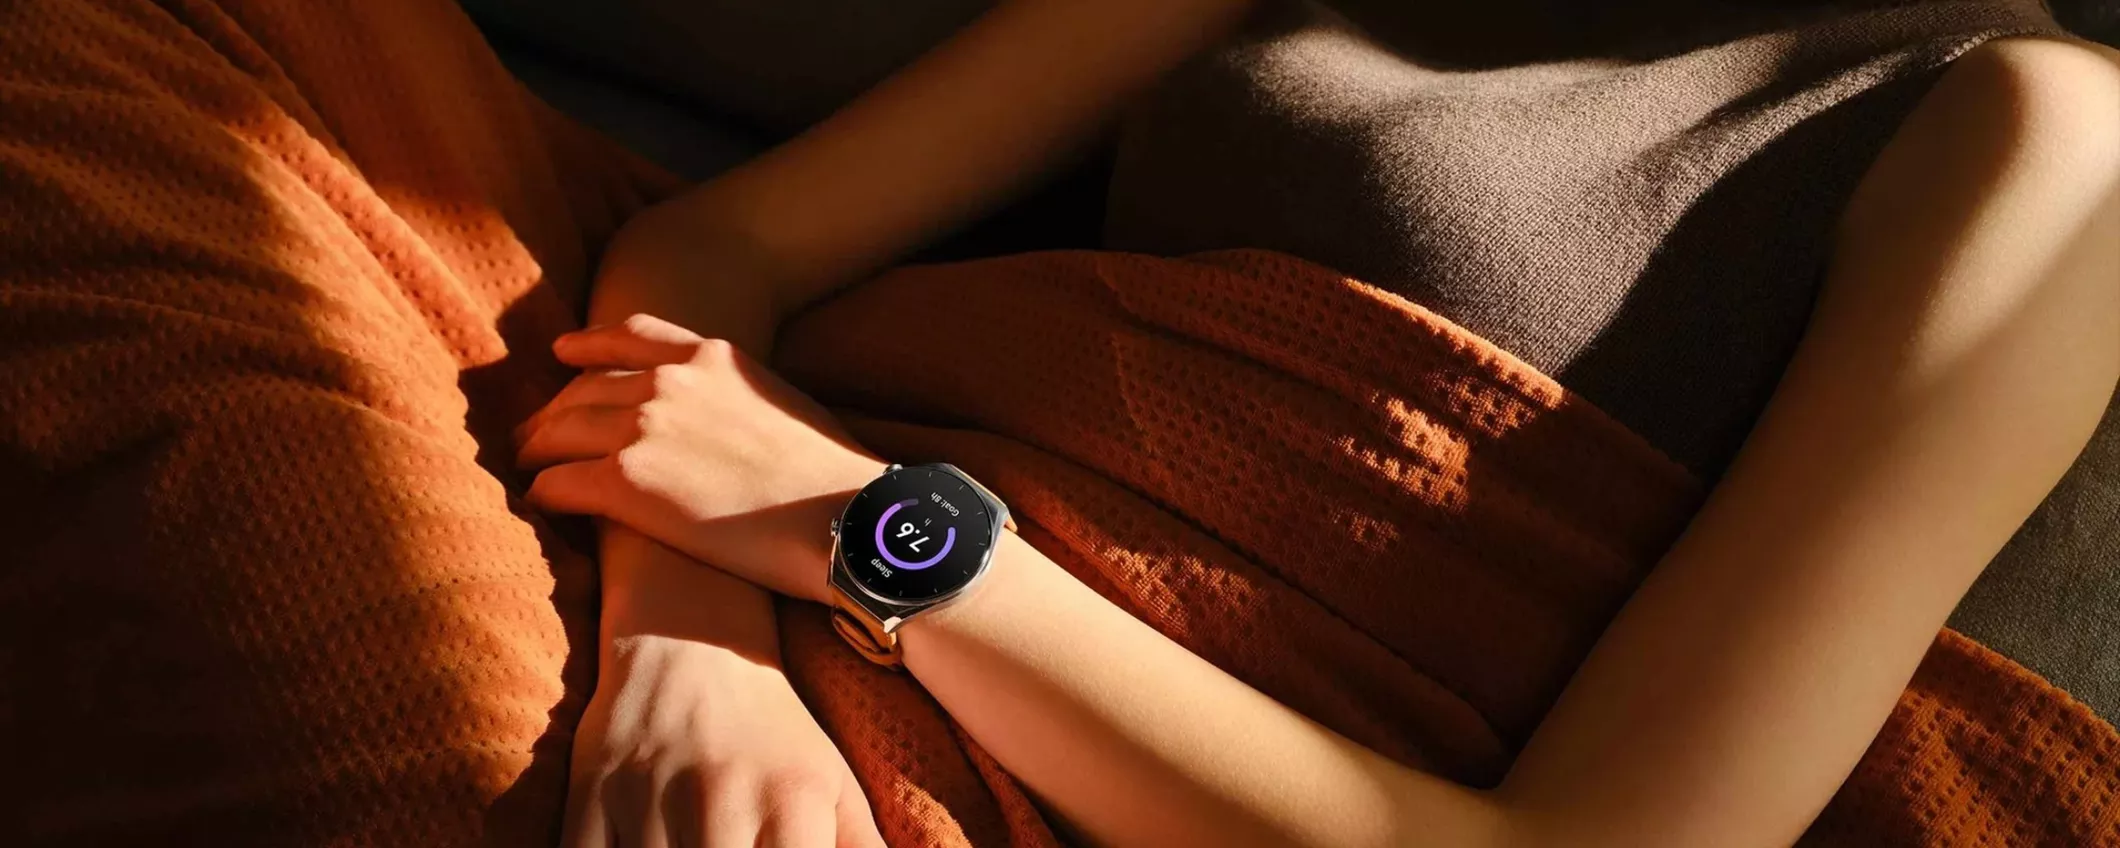 Xiaomi Watch S1 in offerta a soli 149,99 su Amazon (disponibilità immediata)